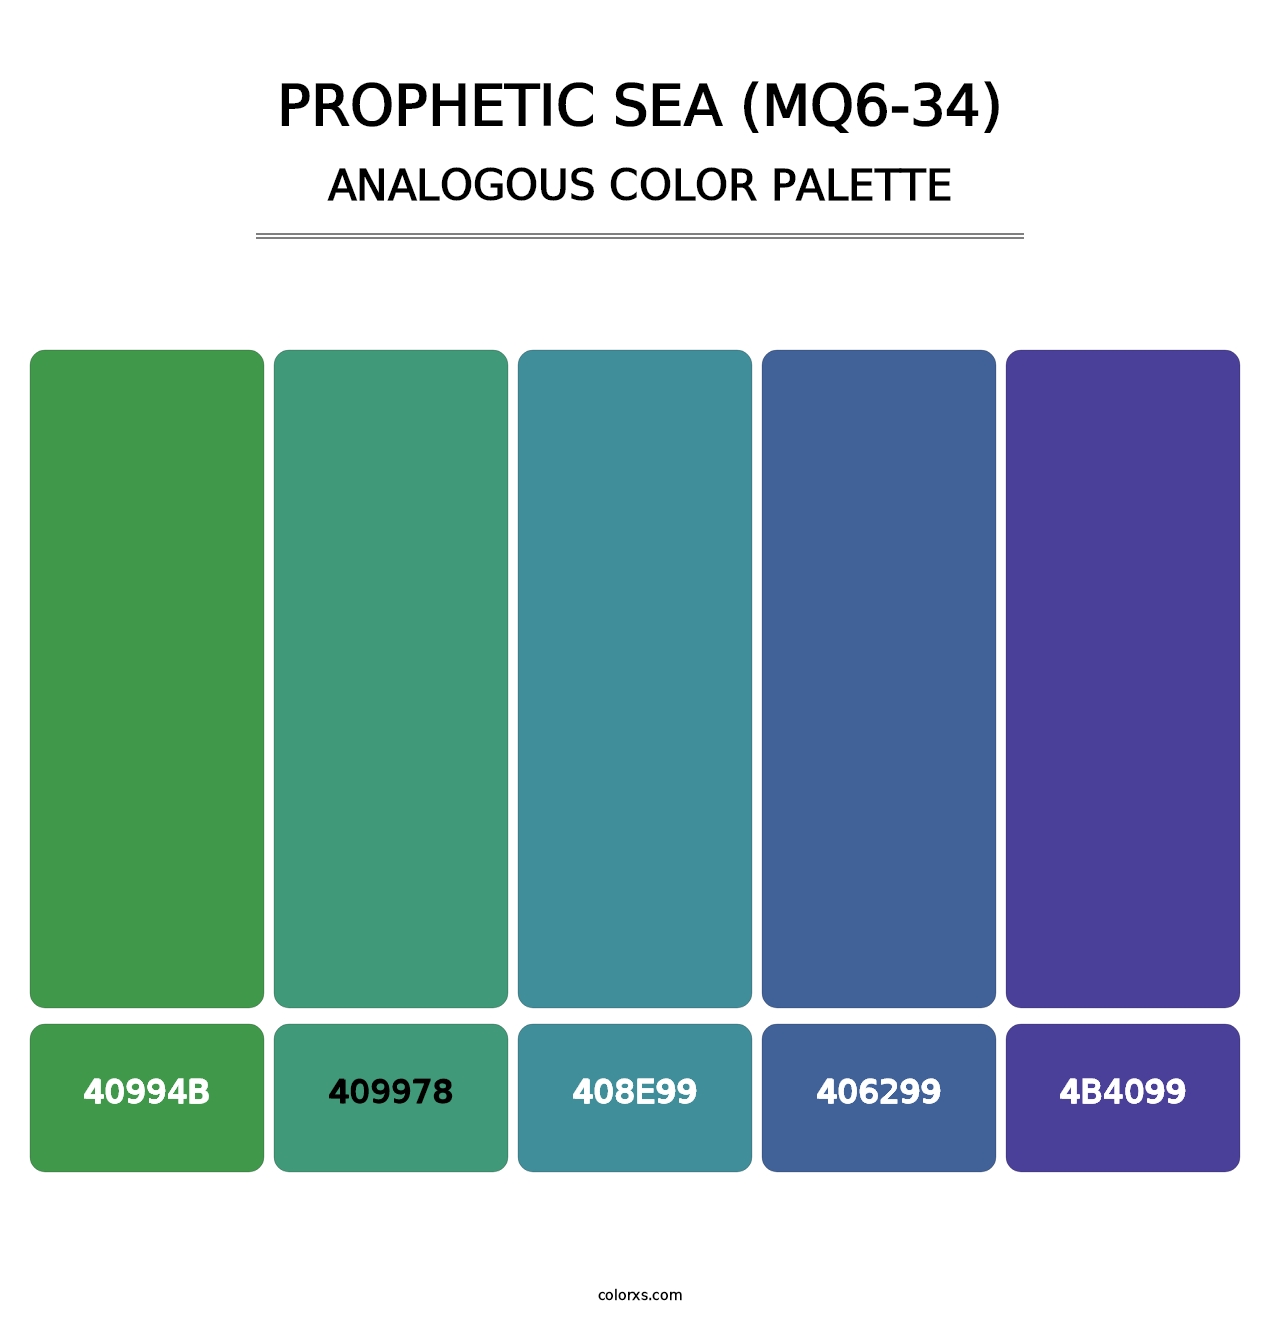 Prophetic Sea (MQ6-34) - Analogous Color Palette